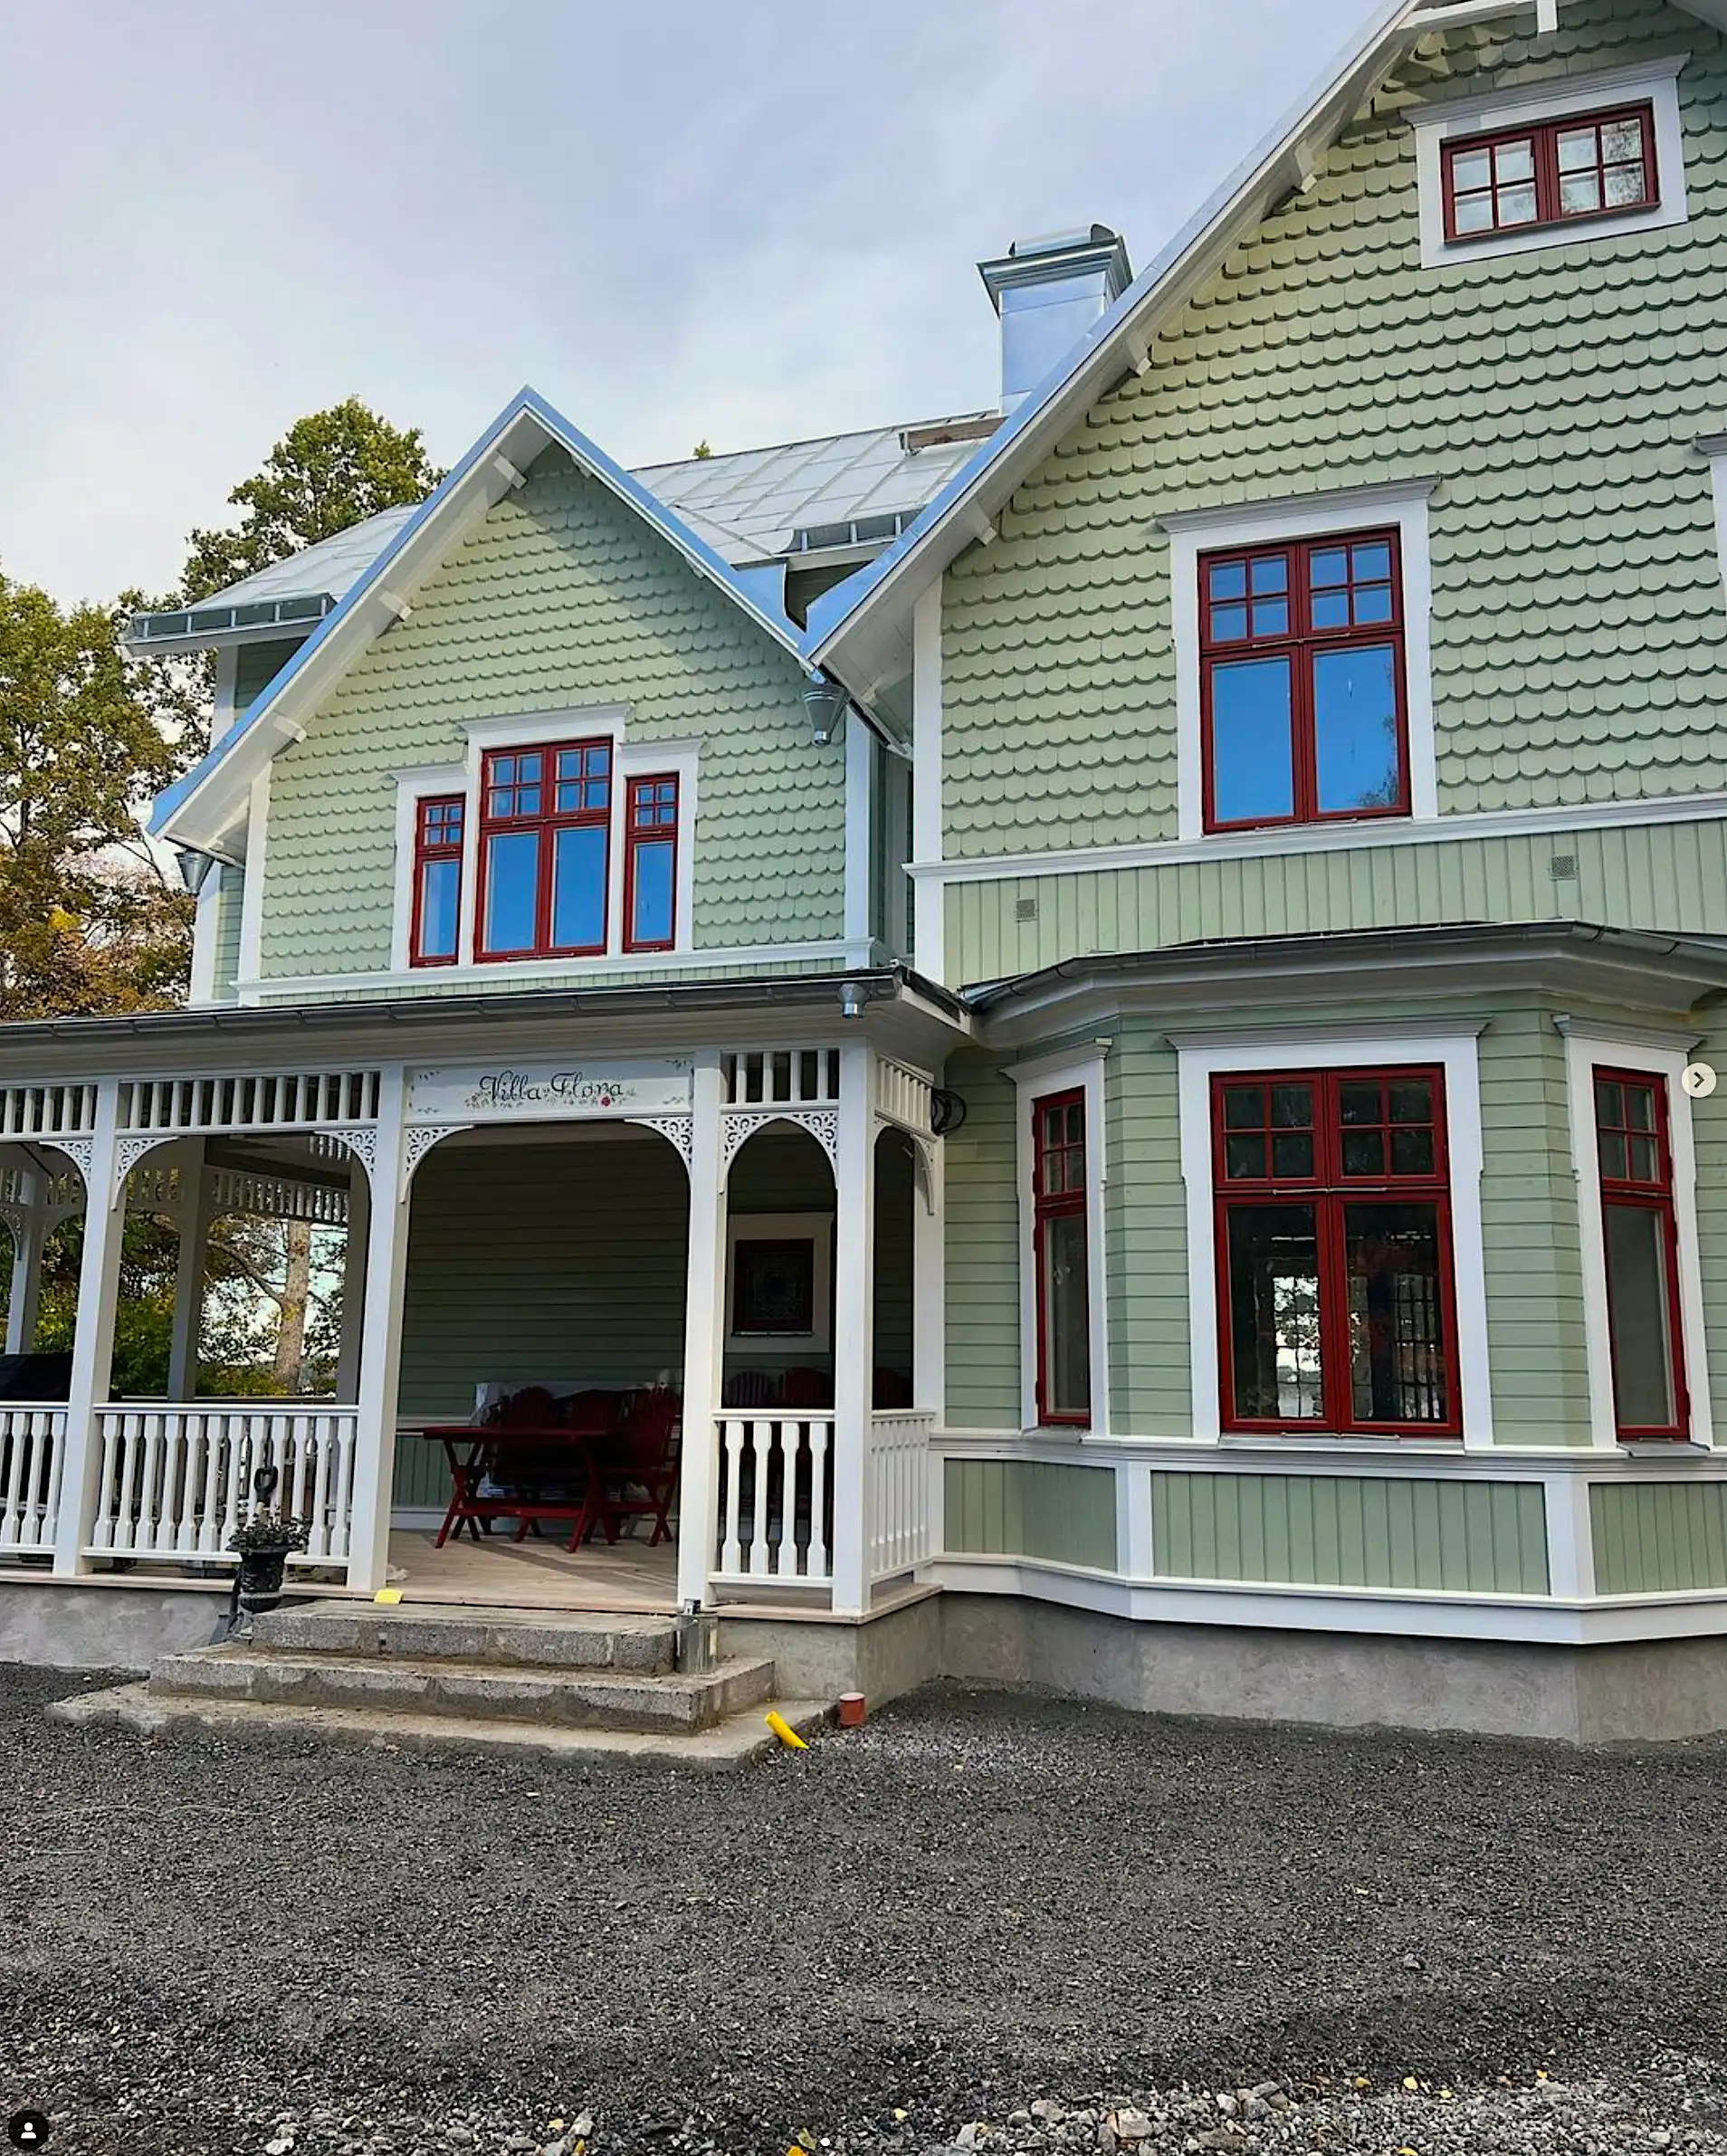 Grönt hus med veranda och mycket snickarglädje. Träkonsoler för utomhusbruk med inspiration från sekelskifte och 1800-tals Jugend - Gaveldekor